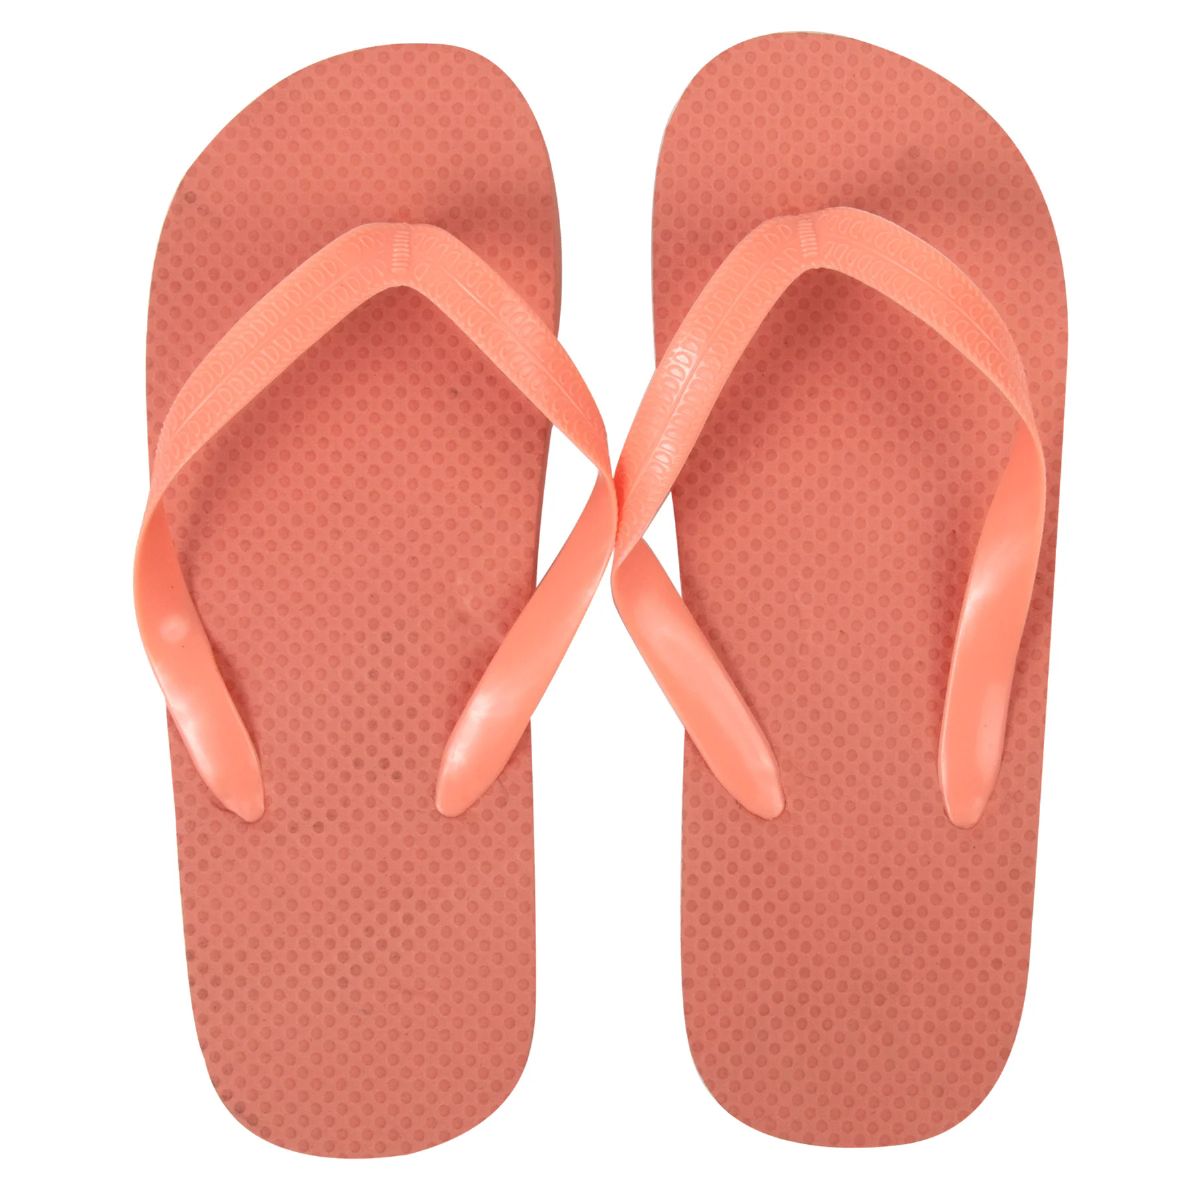 Wholesale Footwear Women's Flip Flops - Peach